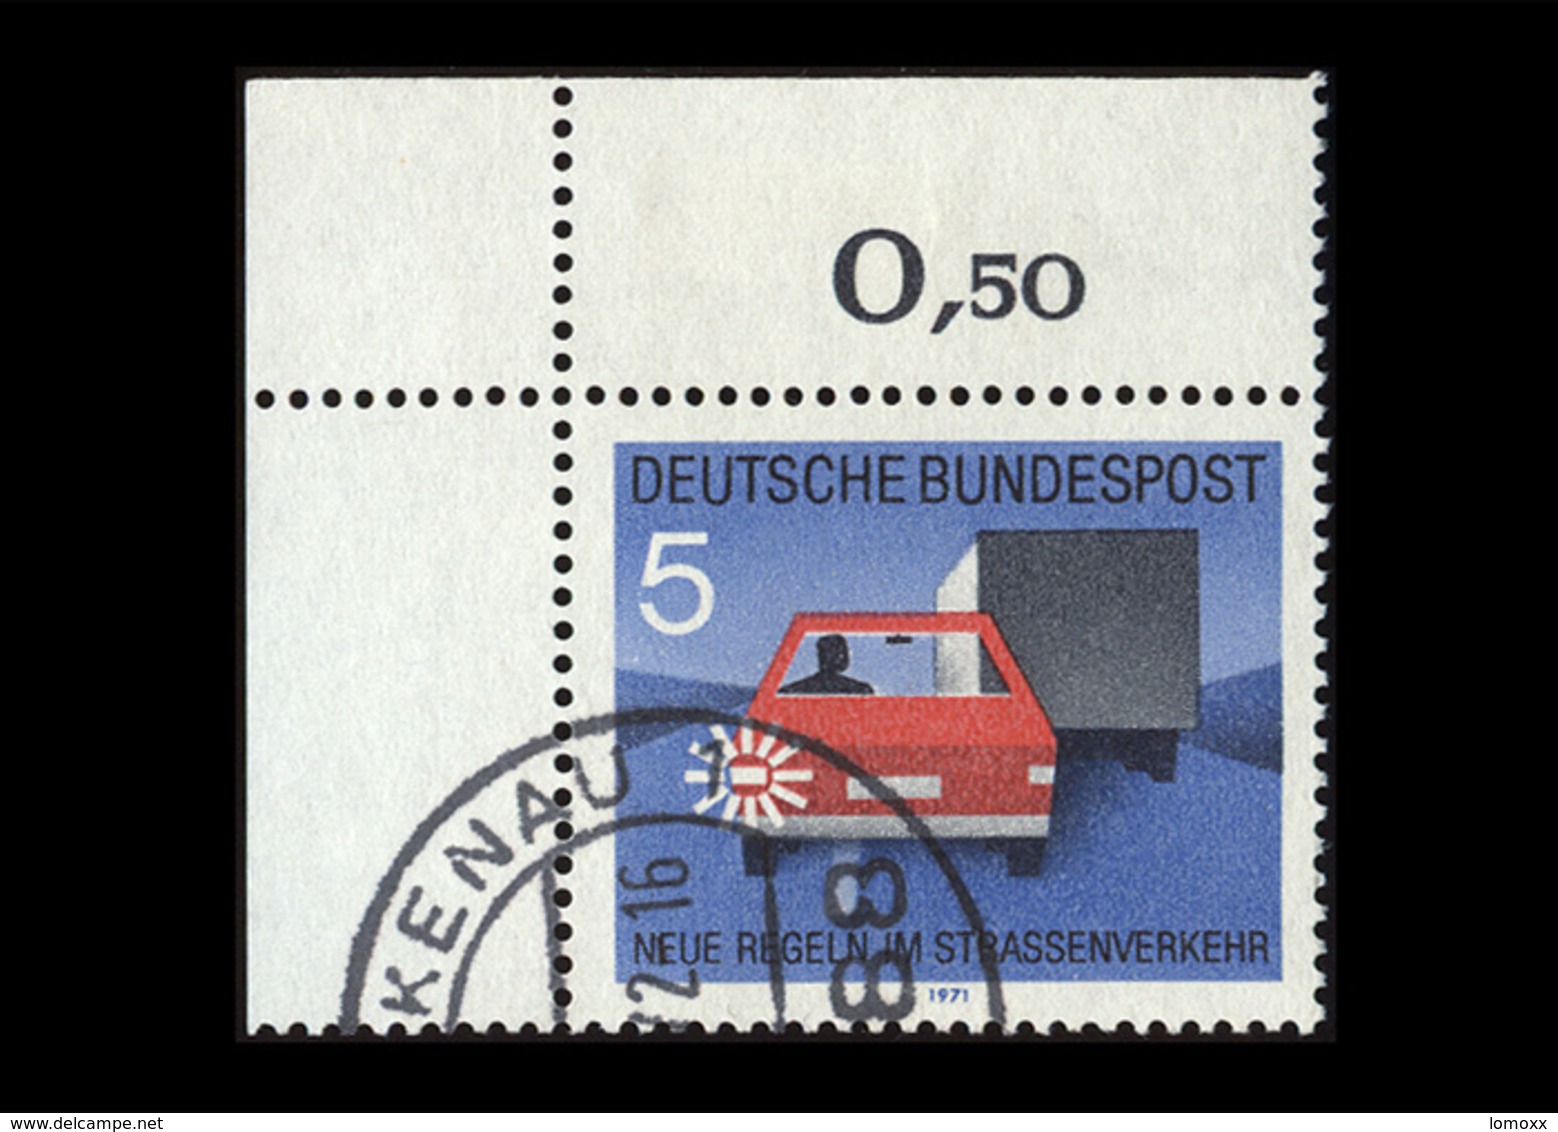 BRD 1971, Michel-Nr. 670, Neue Regeln Im Straßenverkehr, 5 Pf., Eckrand Oben Links, Gestempelt - Used Stamps